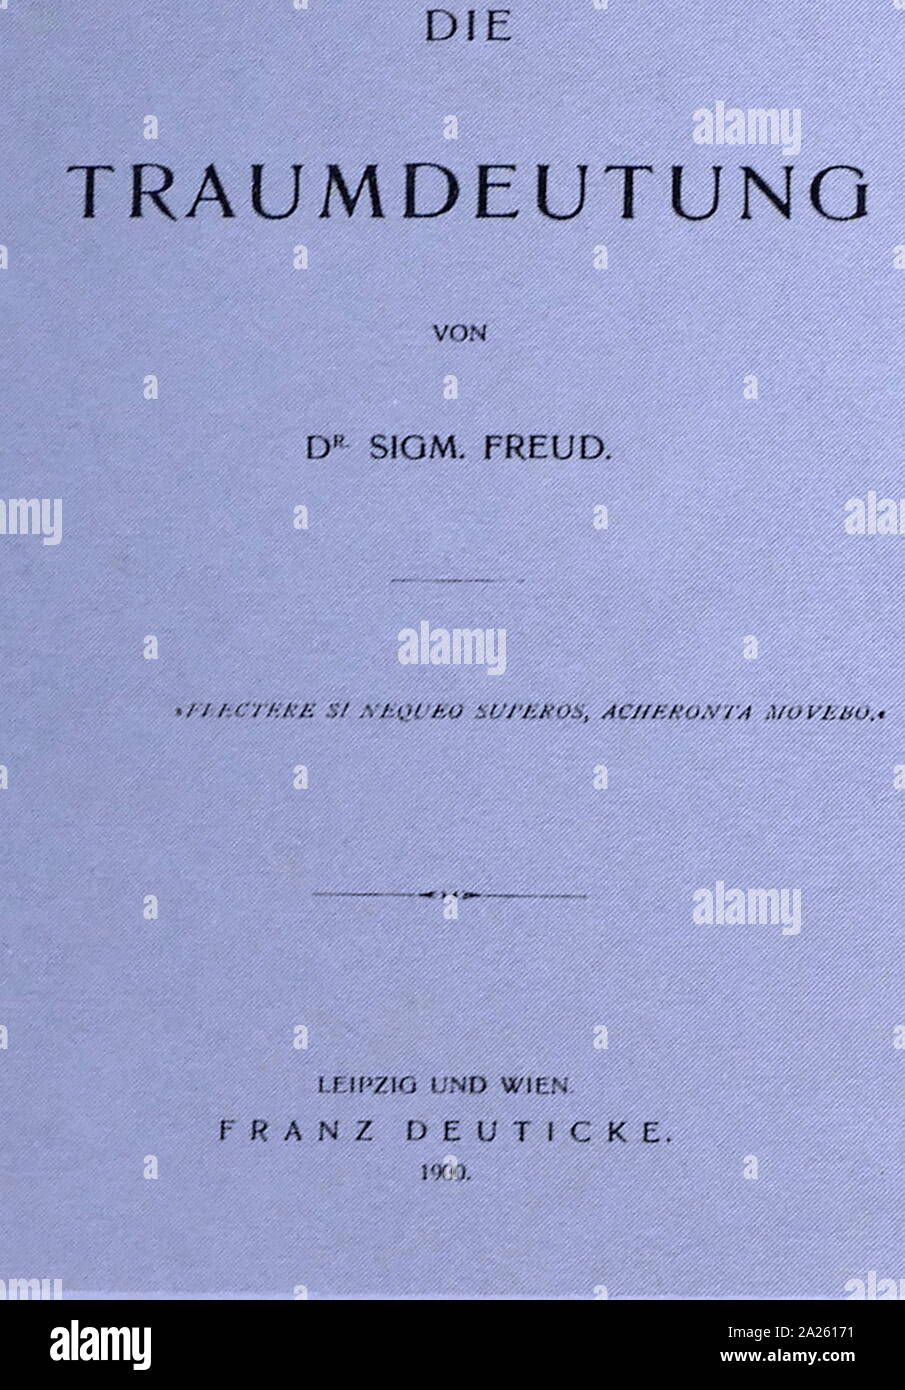 Titelblatt von "Interpretation of Dreams" sterben Traumdeuting) 1900 von Sigmund Freud (1856 - 23. September 1939); österreichischer Neurologe und Begründer der Psychoanalyse Stockfoto